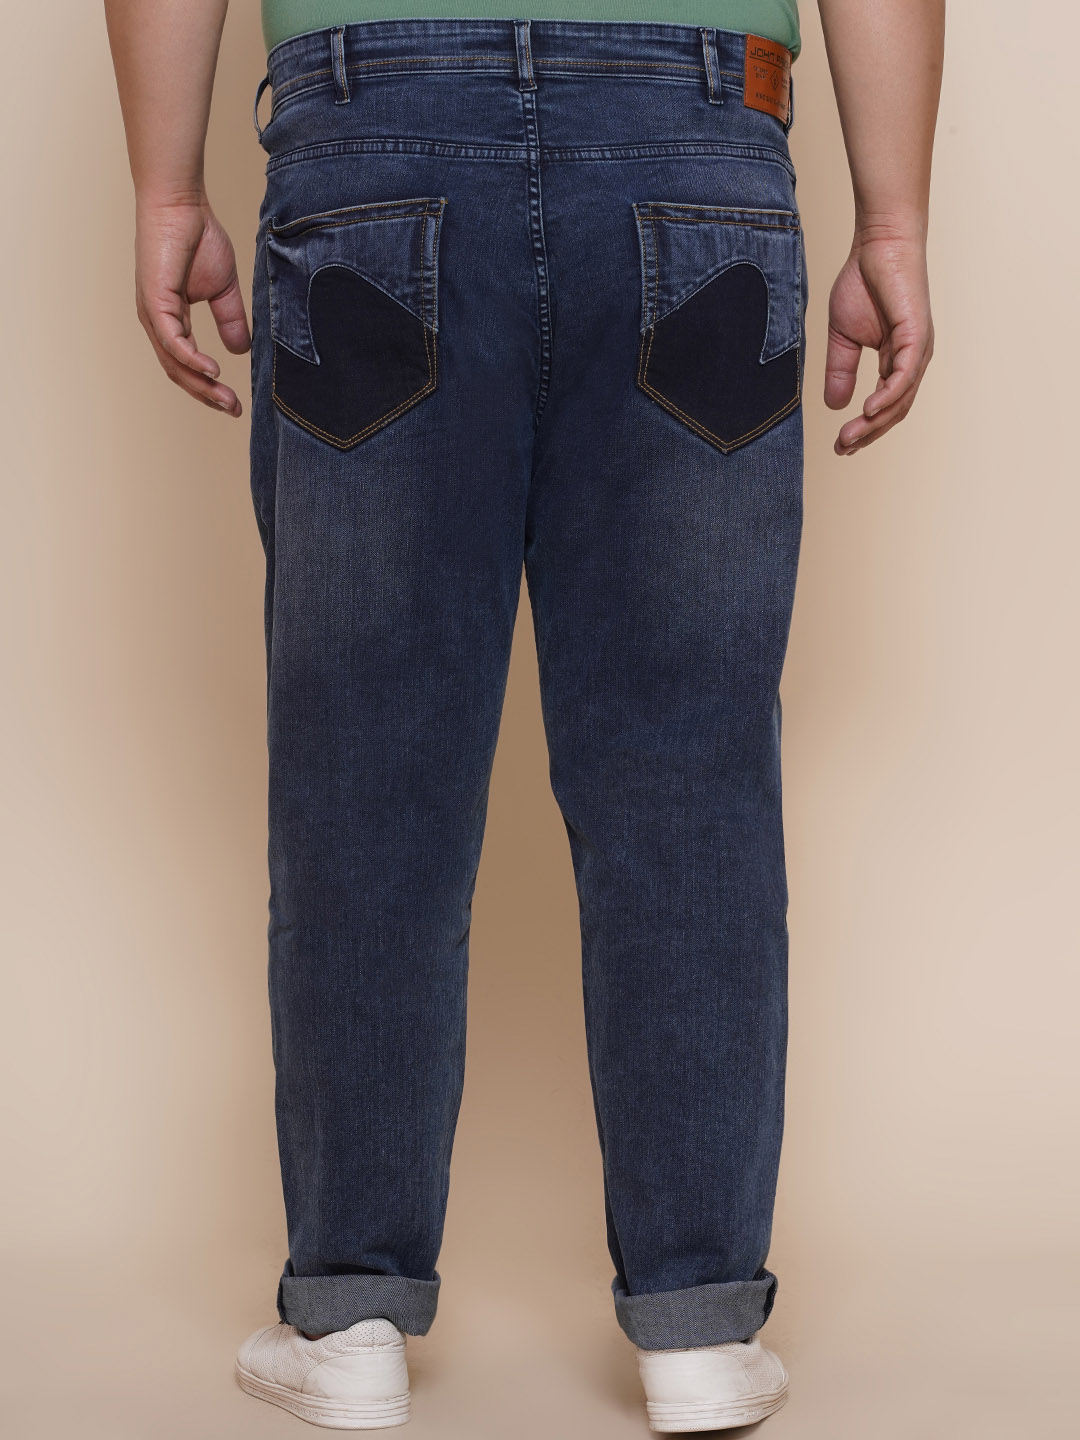 bottomwear/jeans/JPJ12281/jpj12281-3.jpg